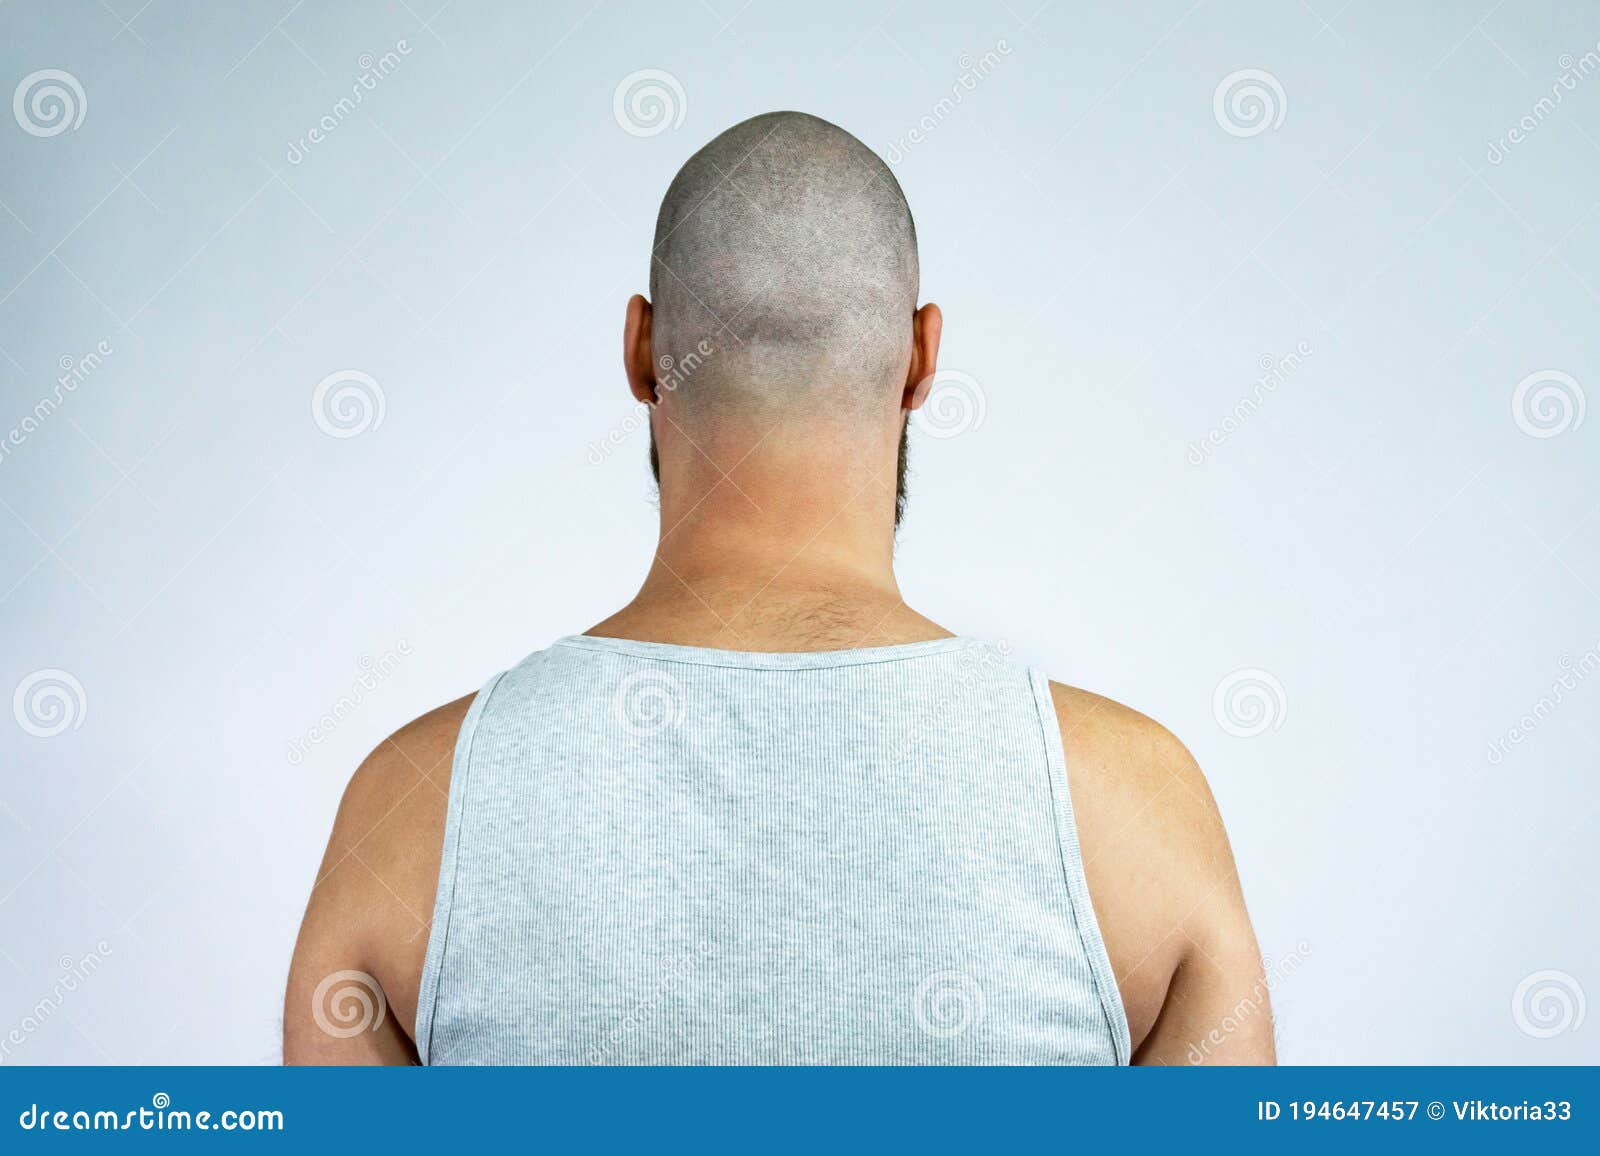 注视着镜子的秃头人顶头光秃和掉头发 库存图片. 图片 包括有 男人, 题头, 发型, 有吸引力的, 细线 - 121981905